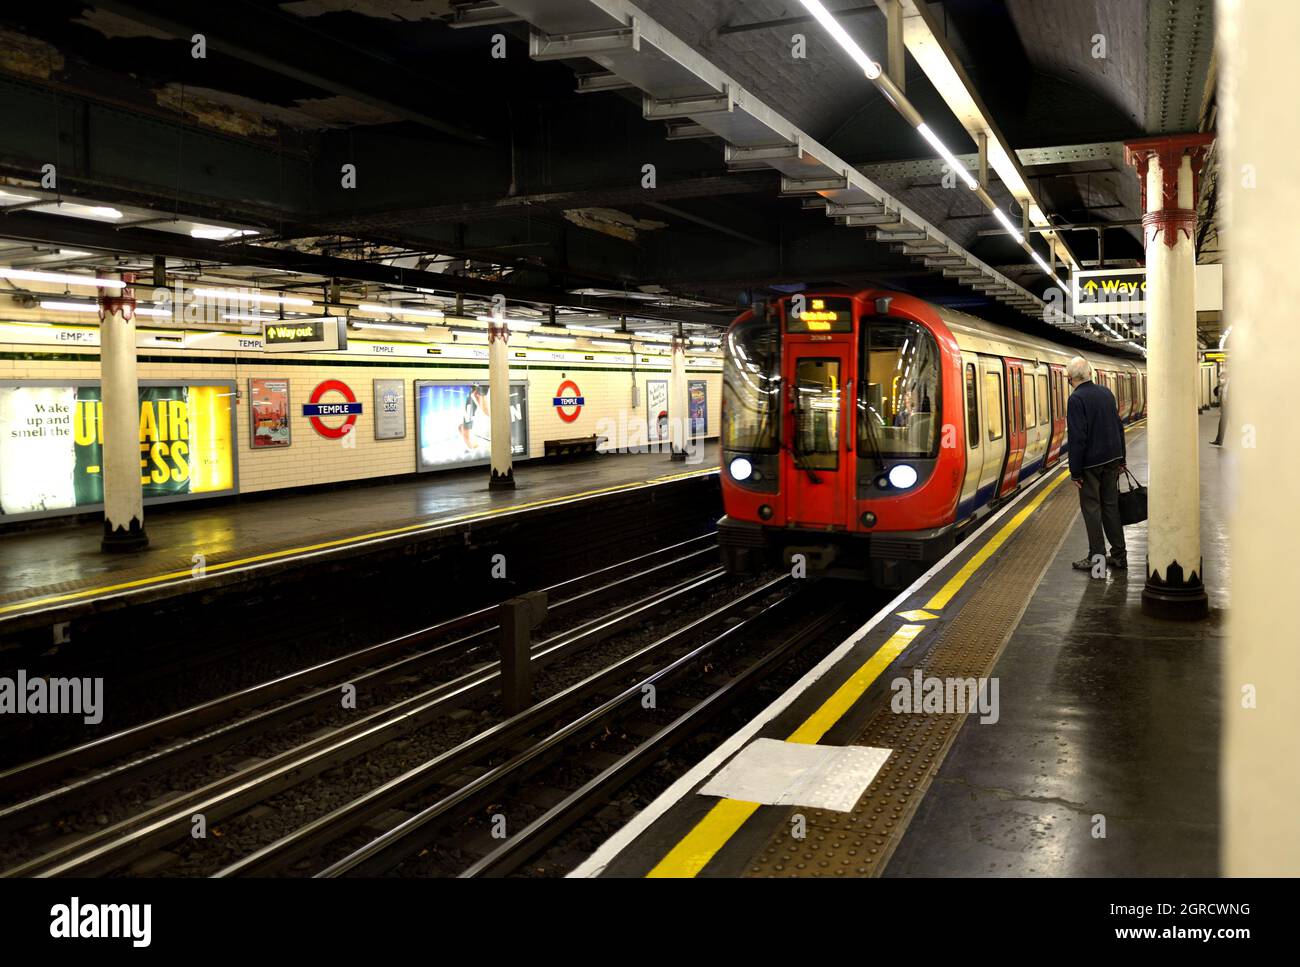 Londra, Inghilterra, Regno Unito. Stazione della metropolitana di Temple - treno che arriva al binario Foto Stock